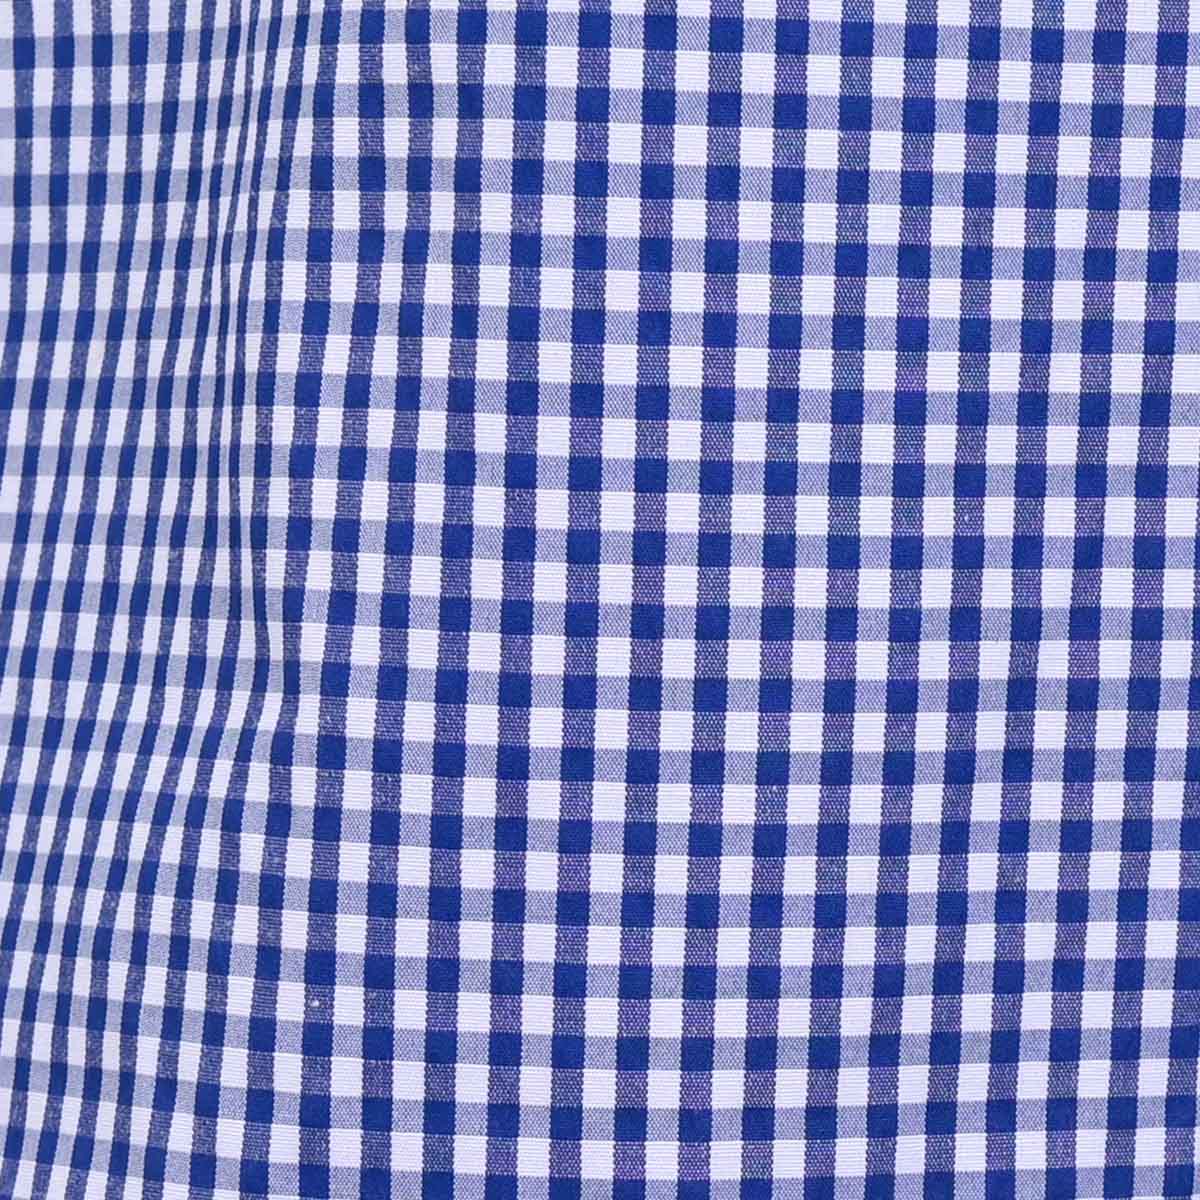 Camisa A Cuello Y Puño Blanco Azul Marino.